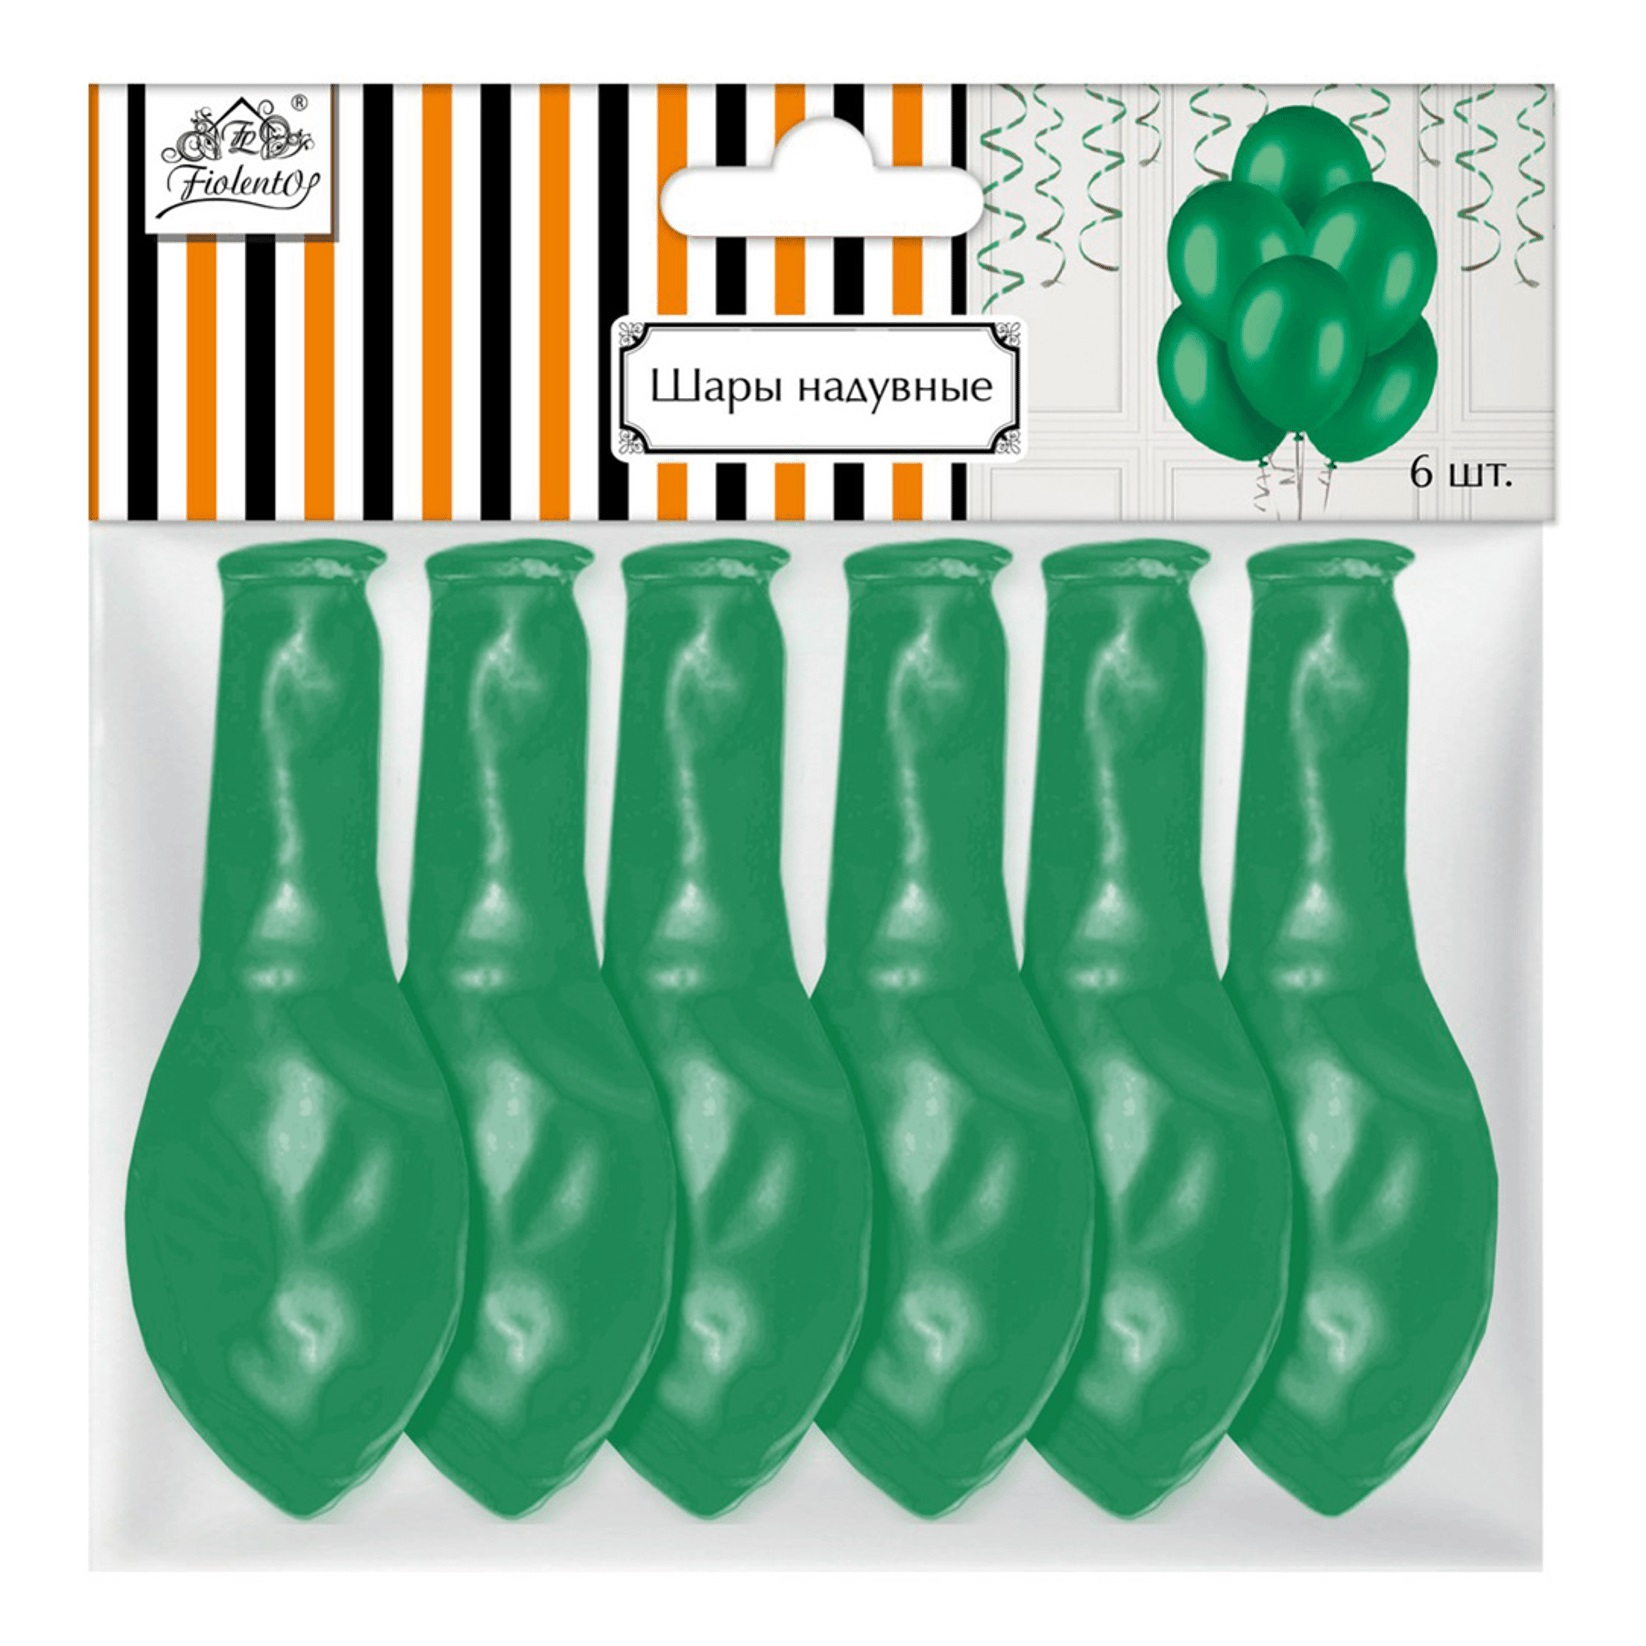 Купить Воздушные шары Fiolento Friend birthday зеленый перламутр 30 см 6 шт,